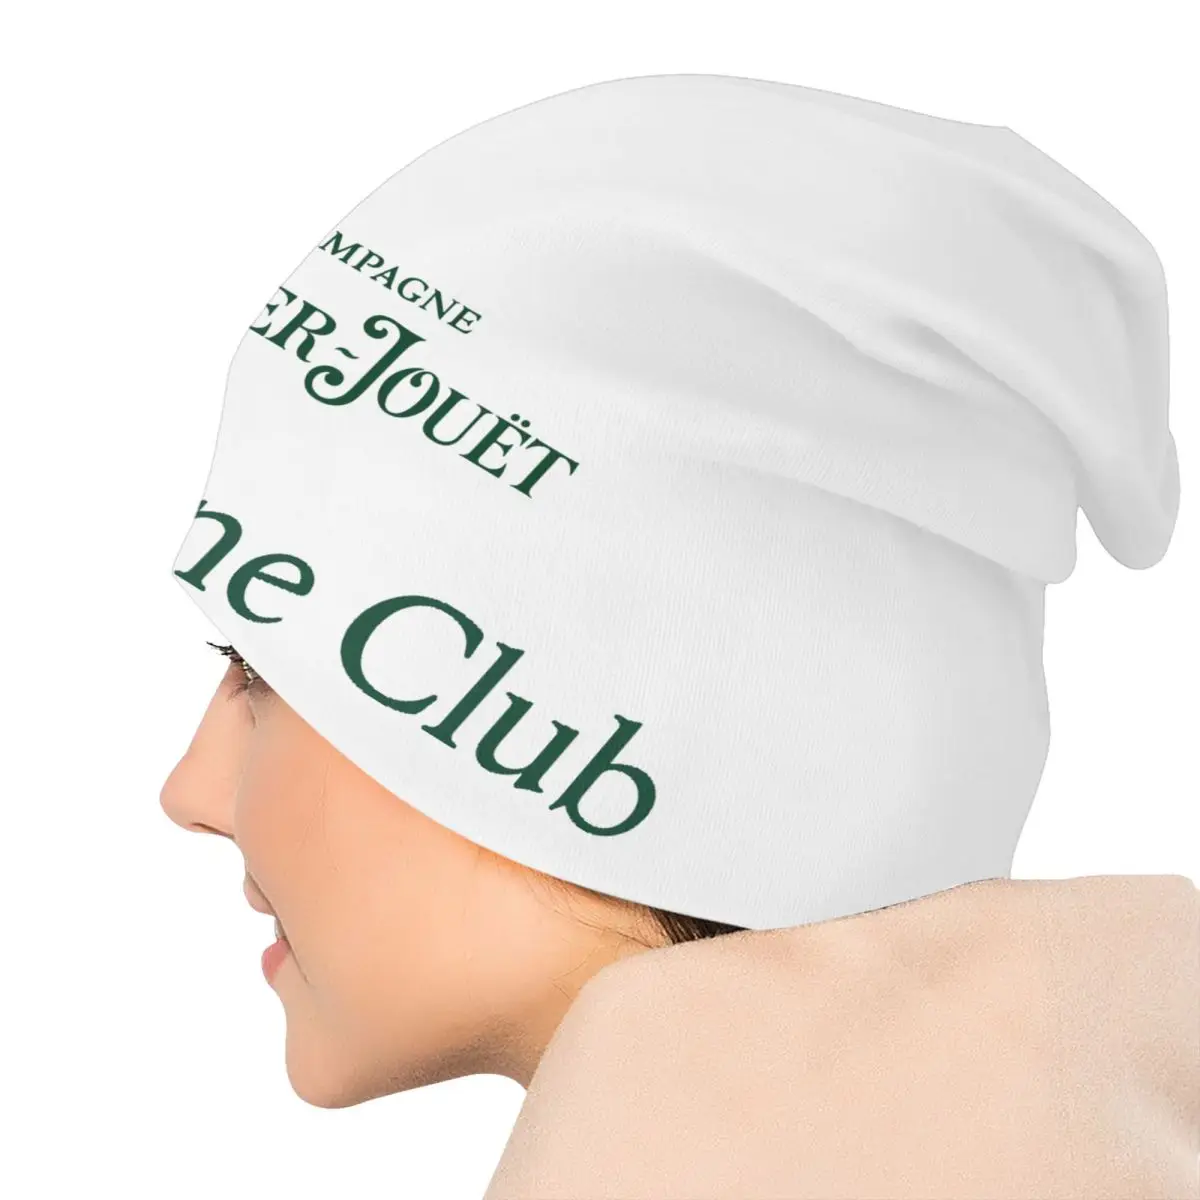 Perrier Şampanya Jouets Logo Skullies Beanies Kapaklar Erkekler Kadınlar İçin Unisex Streetwear Kış Sıcak Örme Şapka Yetişkin Kaput Şapka